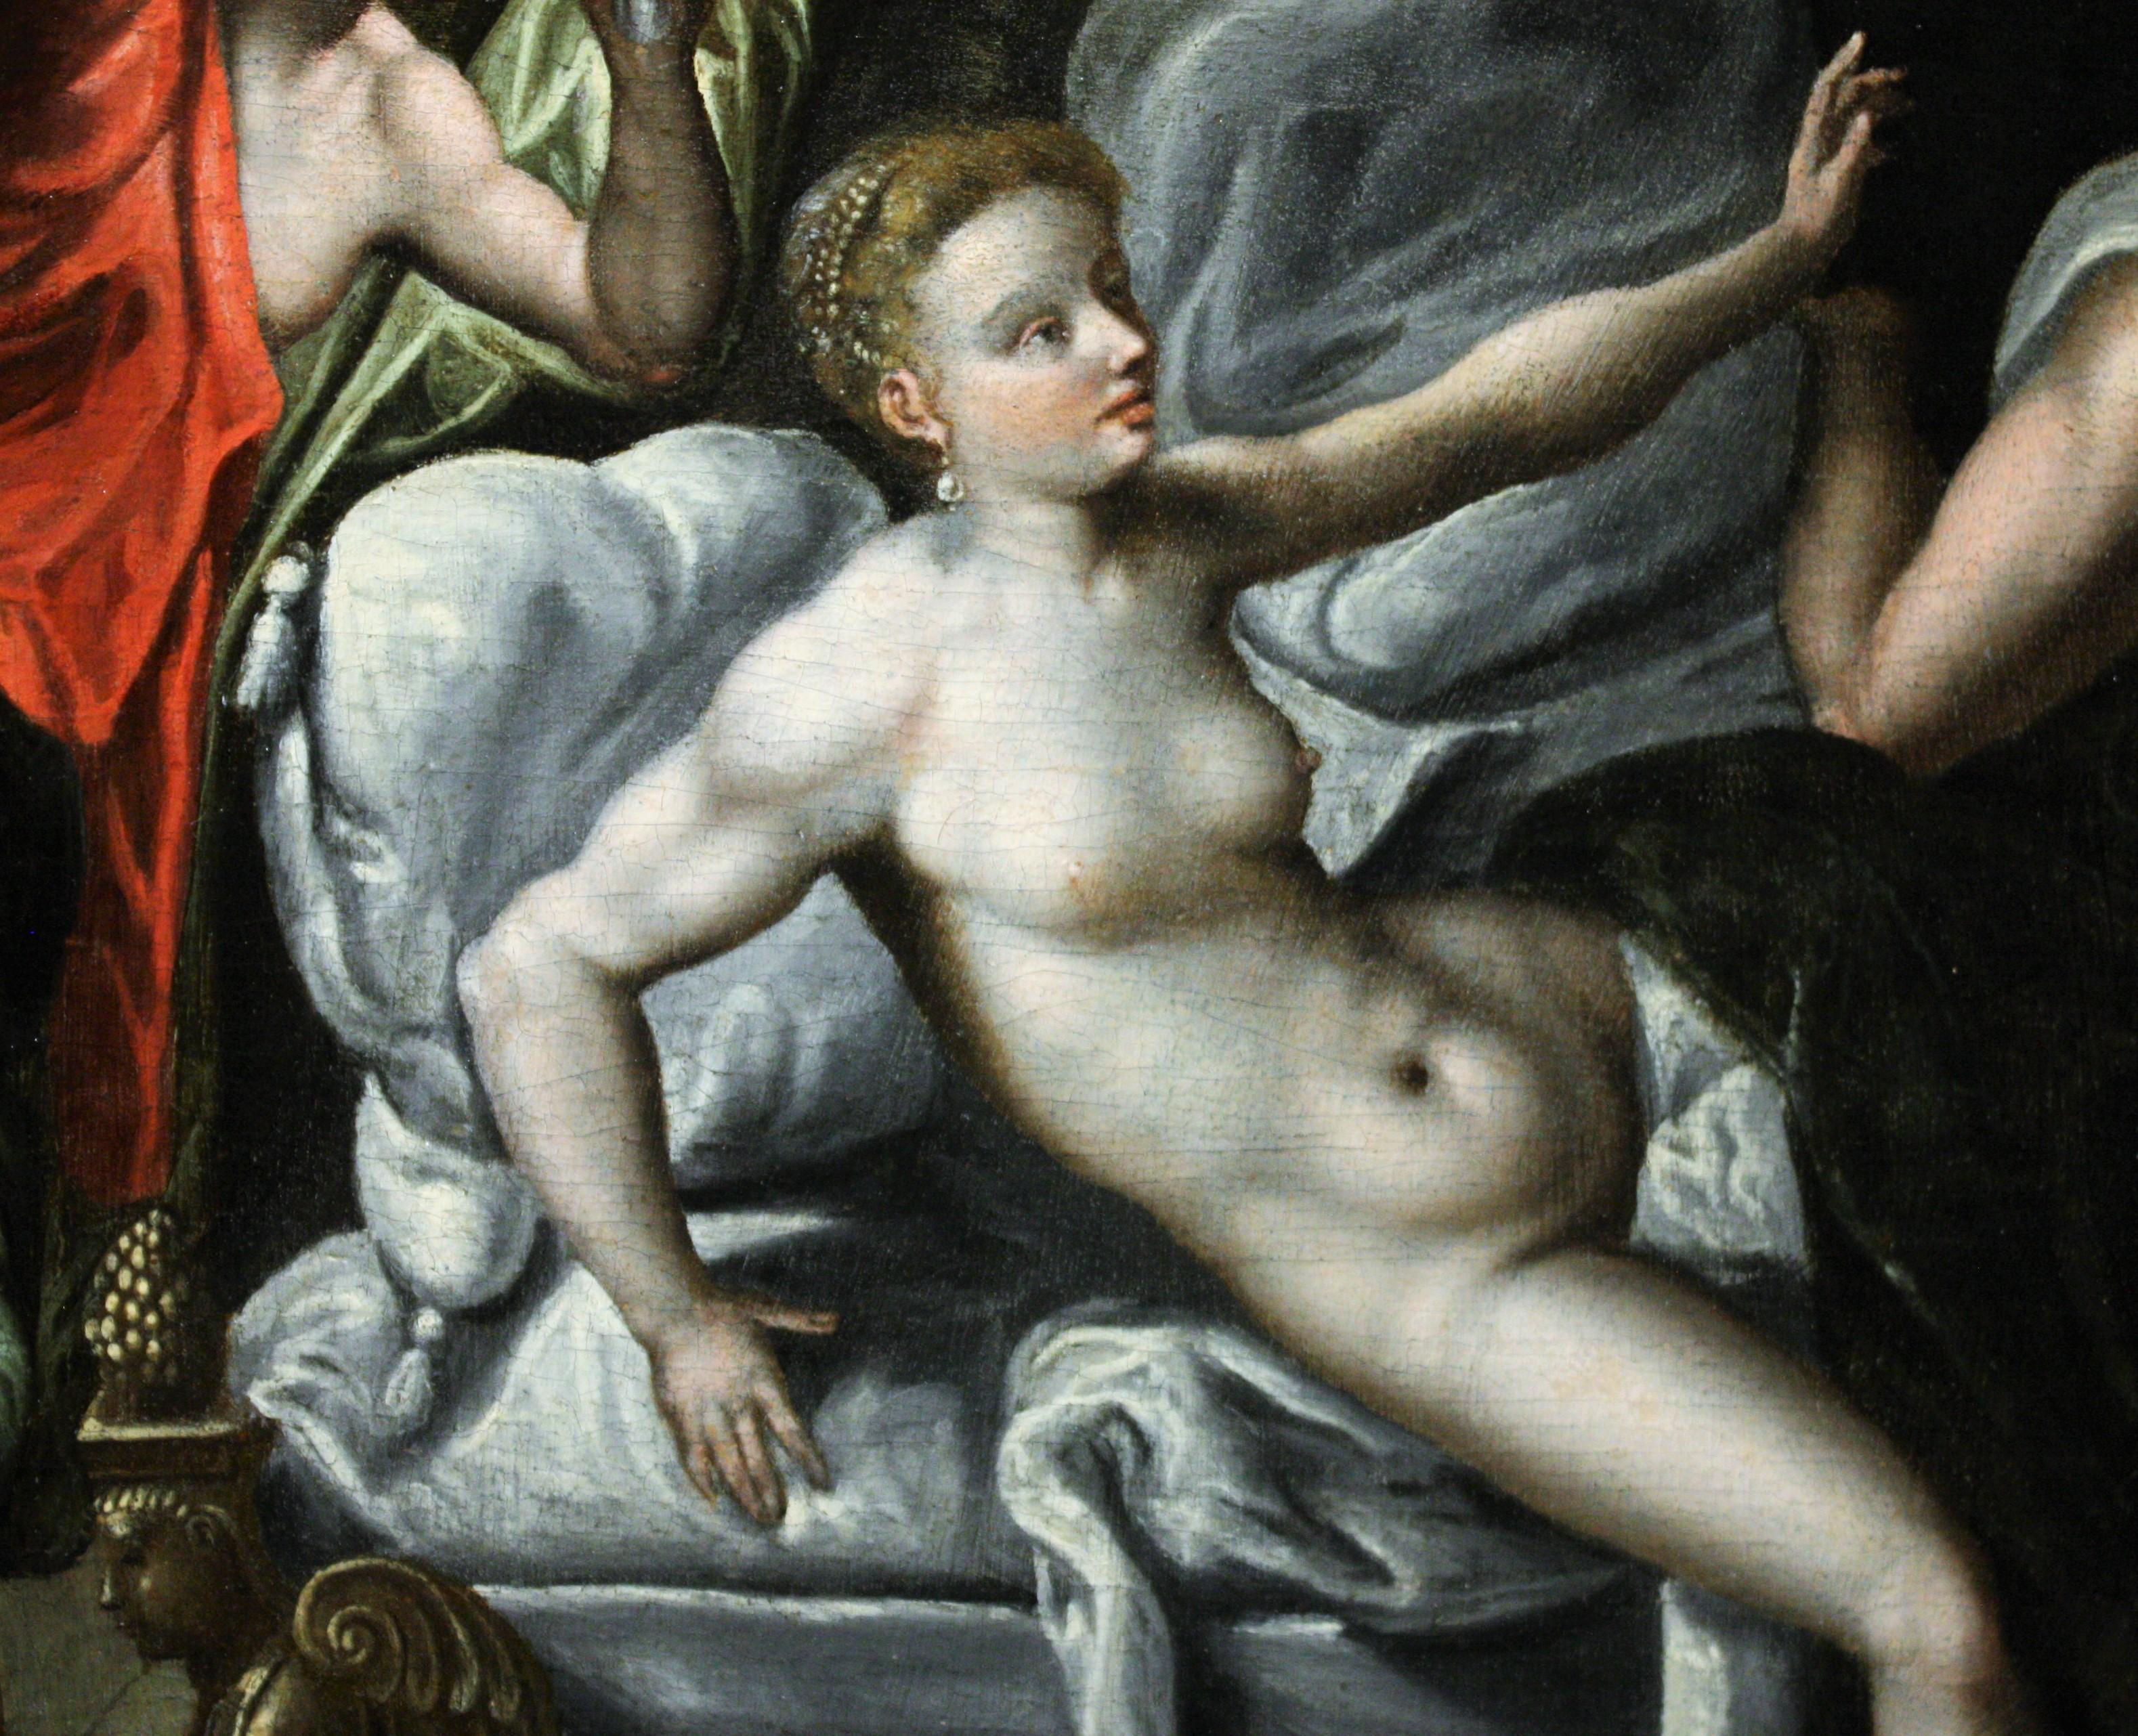 Vénus et Marli surpris par Vulcain, vers 1580, cercle de Jacob de Backer ( Anvers, 1545 - 1585)
Le sujet de notre travail est dérivé des métamorphoses d'Ovide, où l'auteur raconte les amours des Dieux de l'Olympe. Plusieurs interprétations de cette